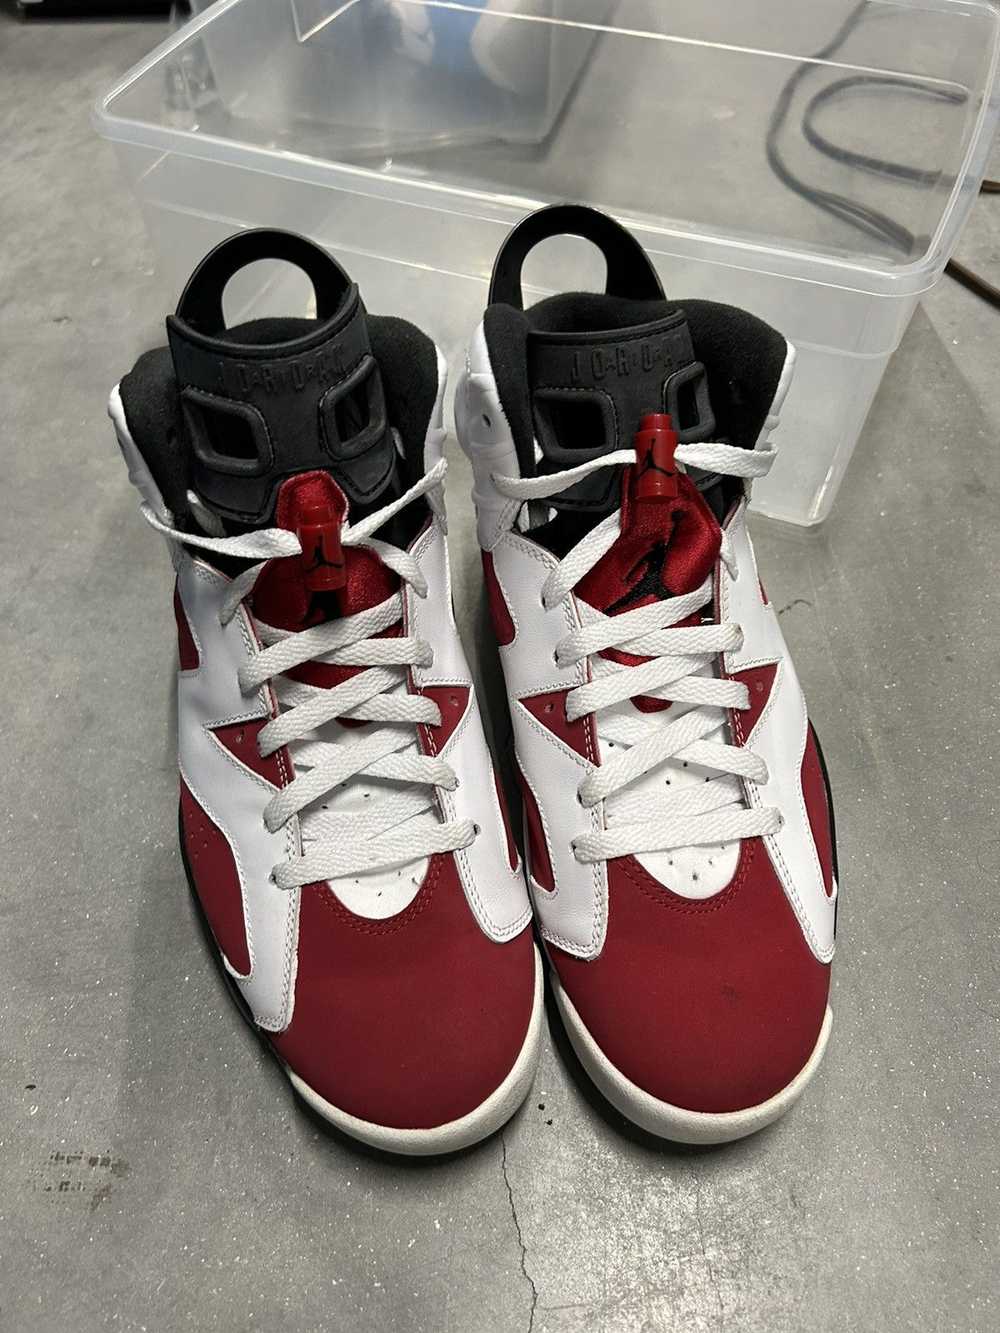 Jordan Brand × Nike Jordan 6 Carmine 2014 9 - image 2